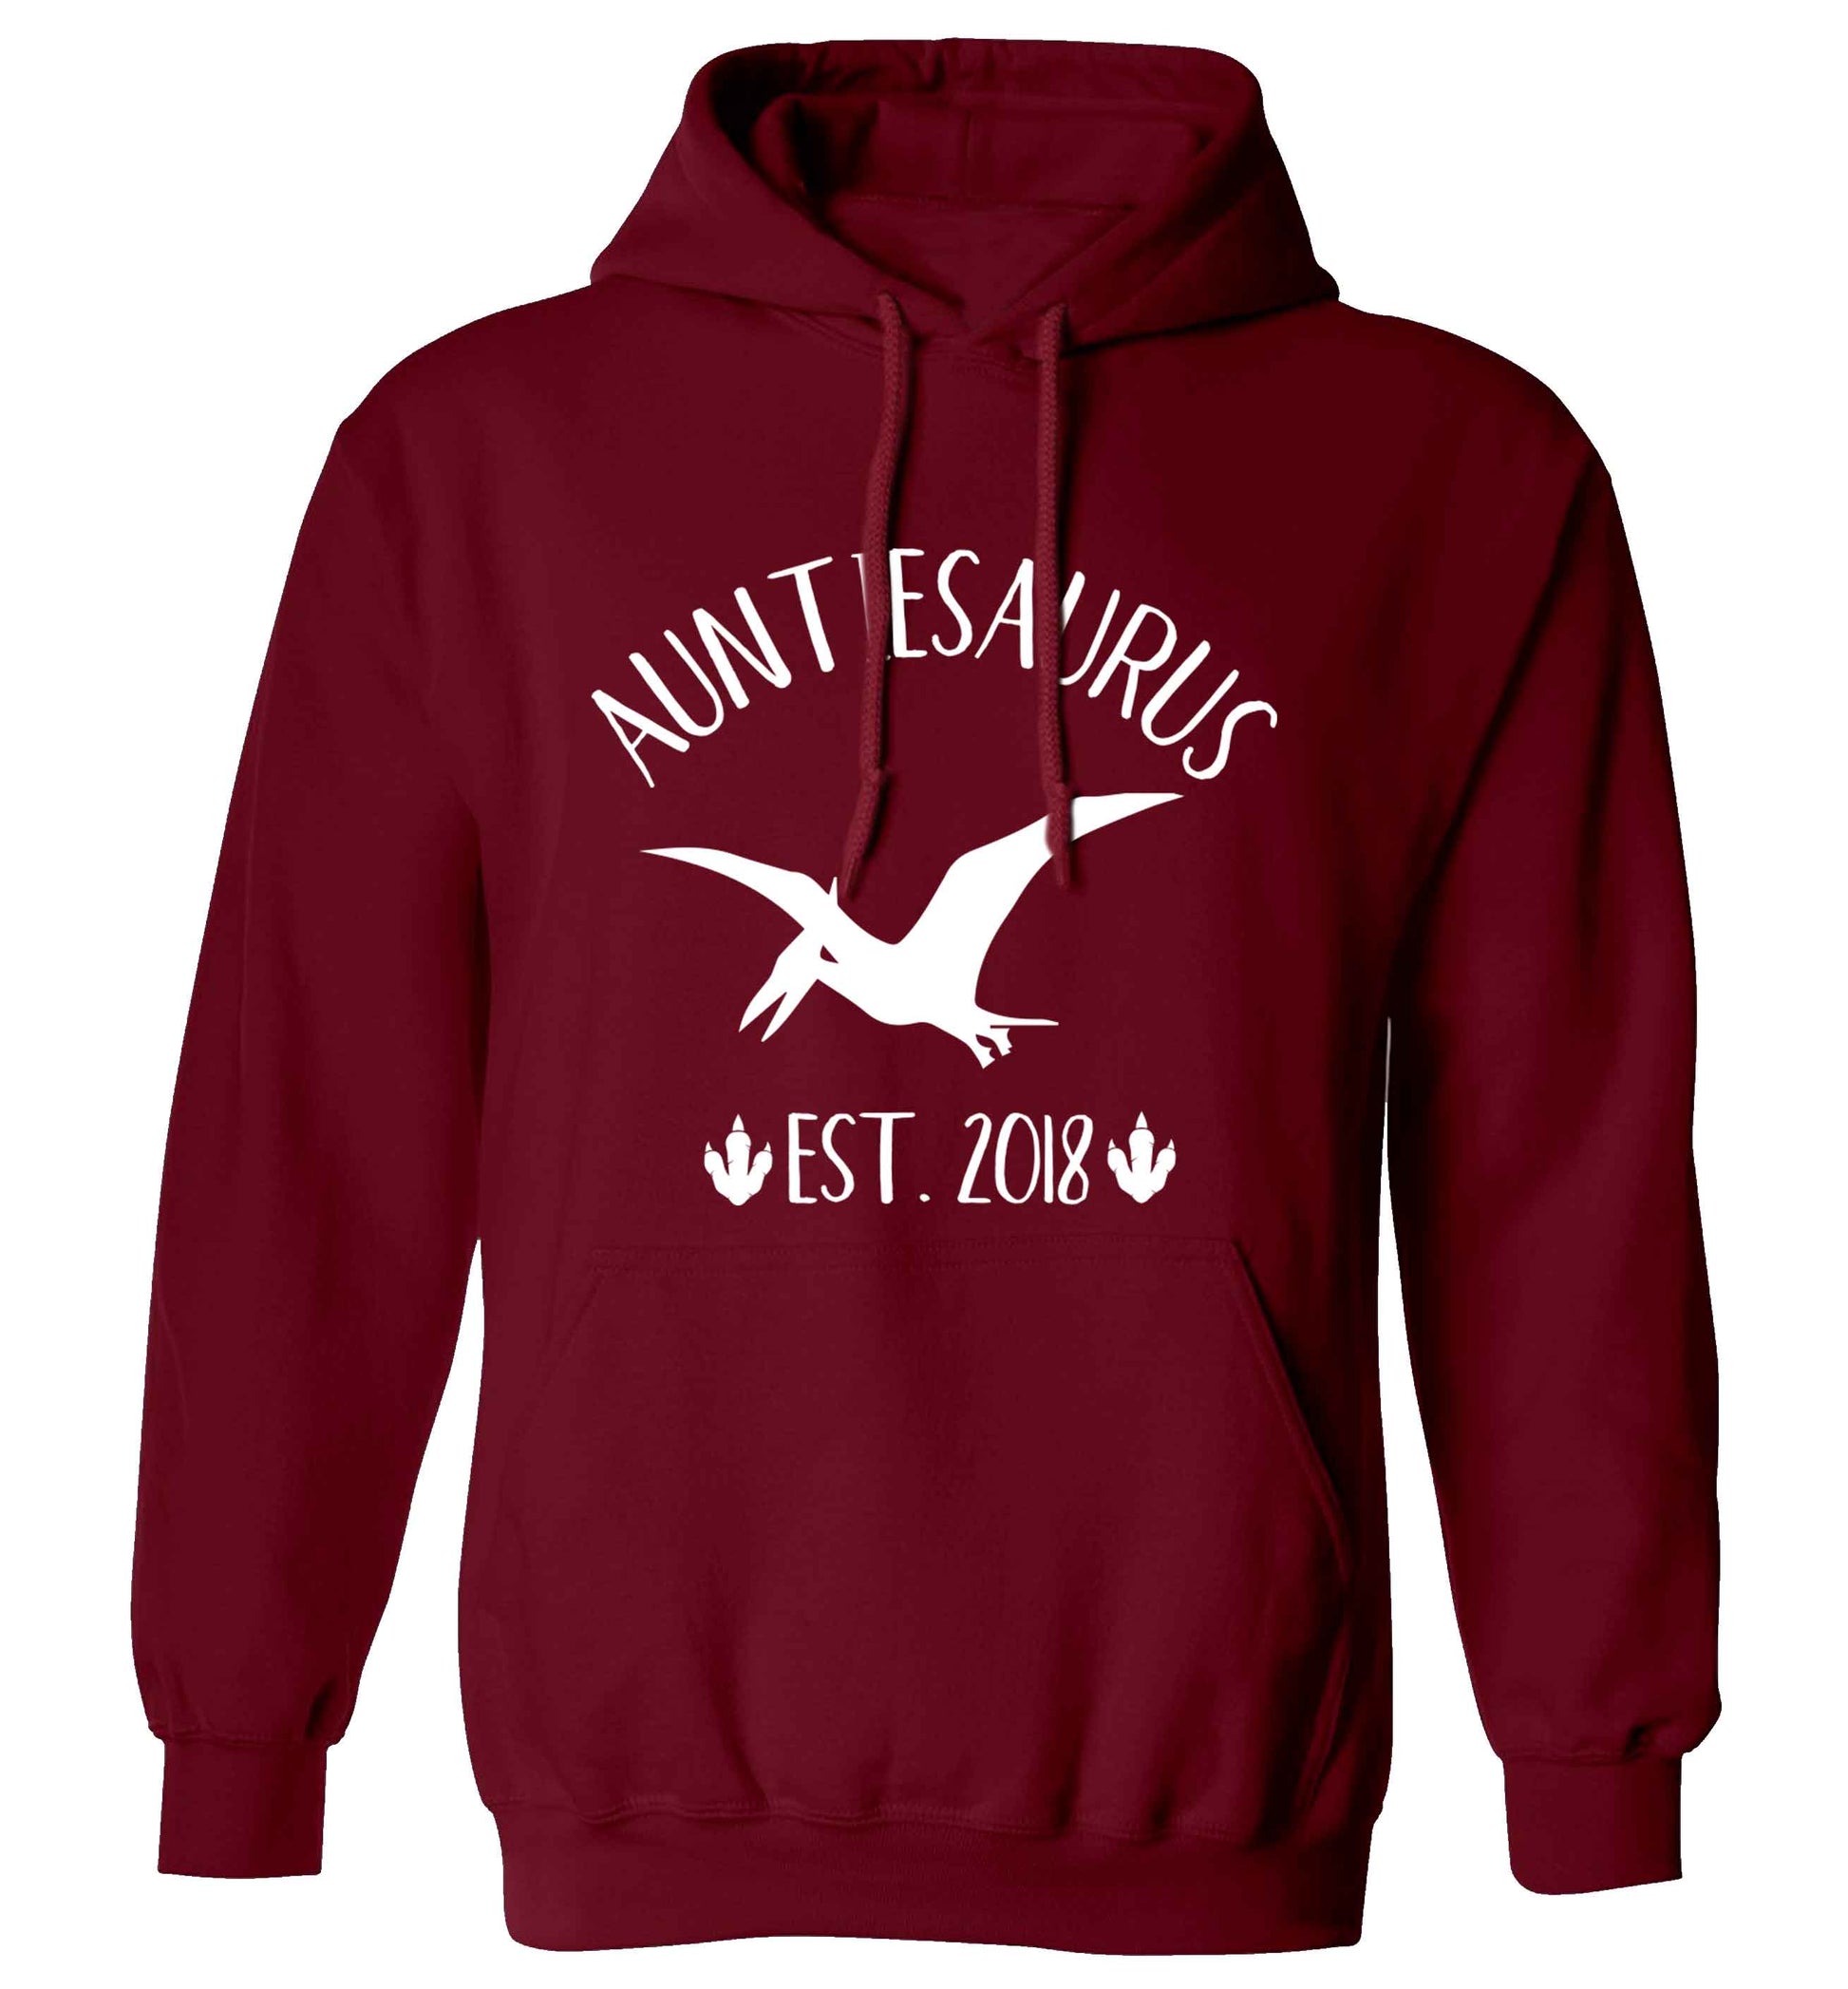 Personalised auntiesaurus since (custom date) adults unisex maroon hoodie 2XL